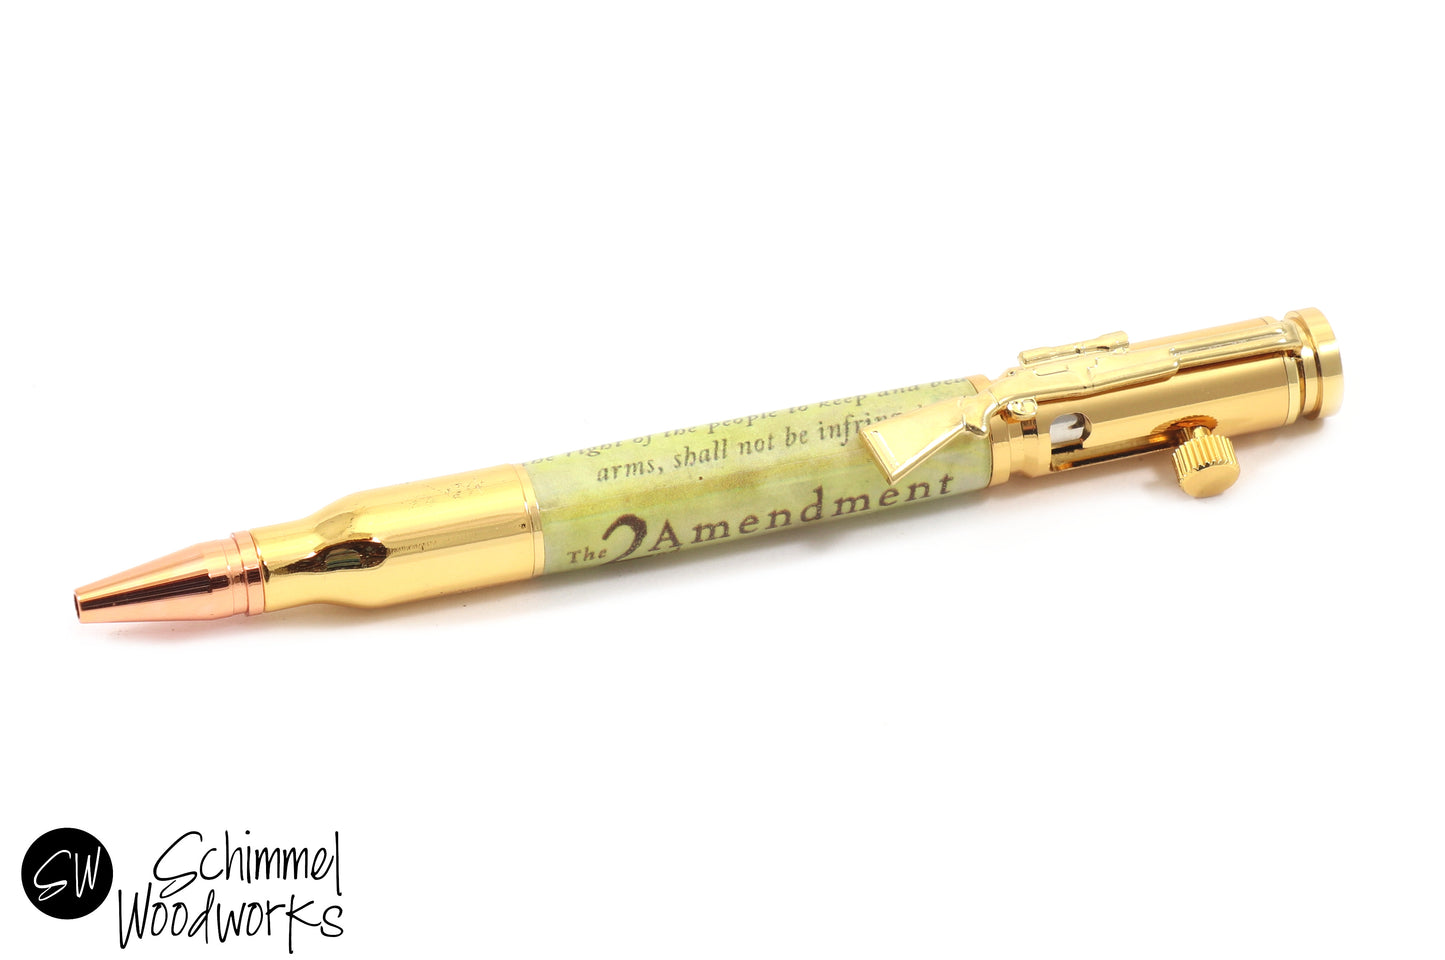 2nd Amendment Bullet Pen